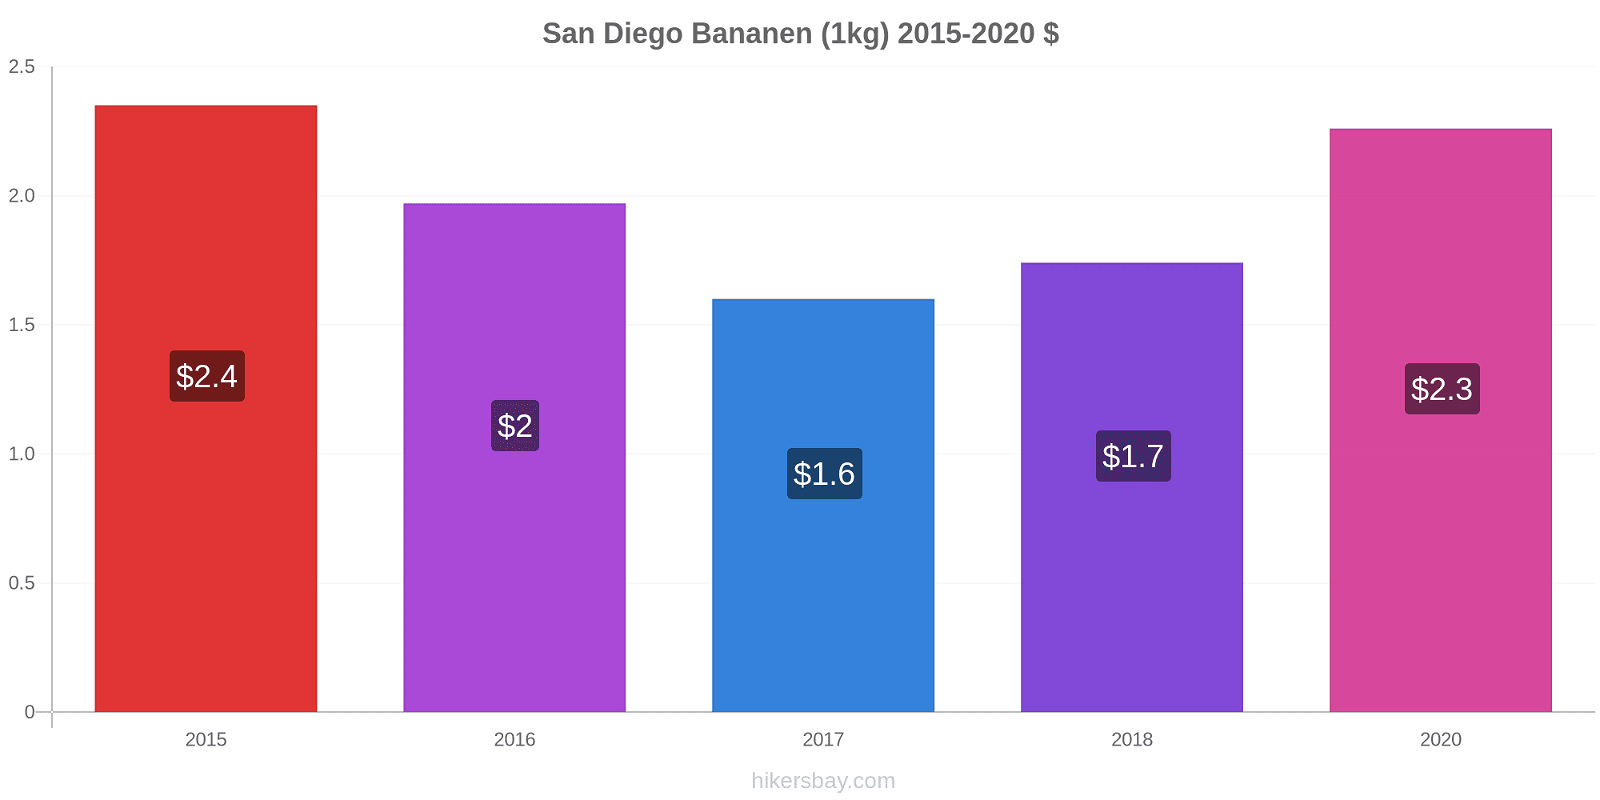 San Diego prijswijzigingen Banaan (1kg) hikersbay.com